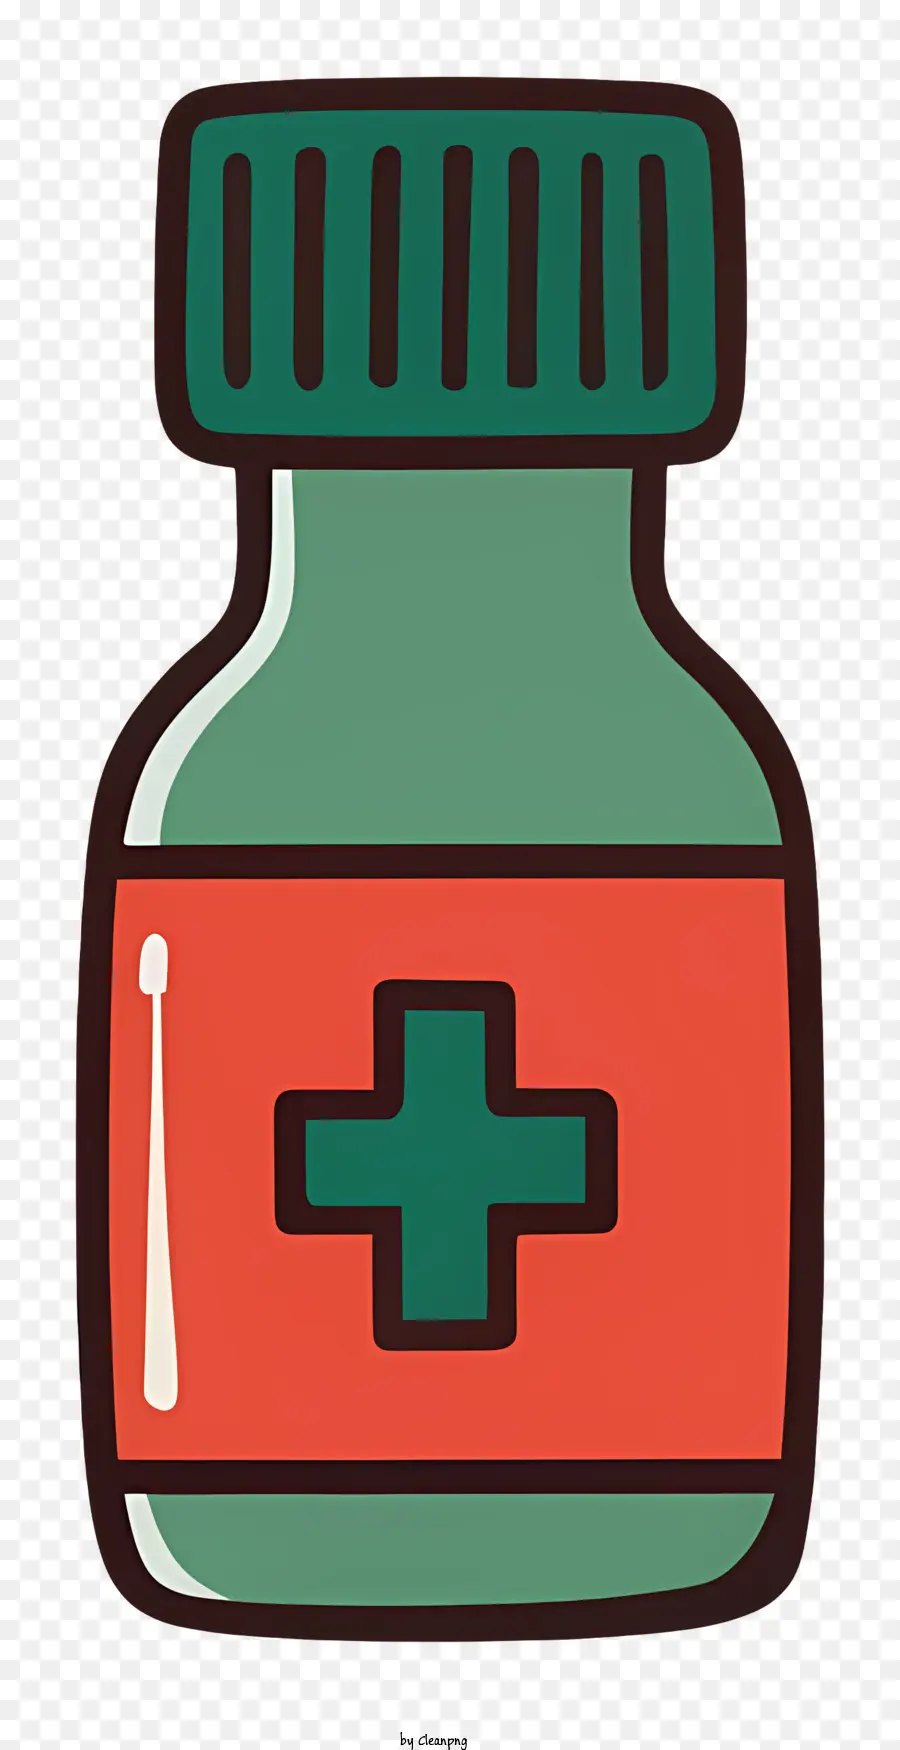 Thuốc thủy tinh thuốc màu đỏ lỏng màu xanh lá cây màu xanh lá cây - Hình minh họa đơn giản của một chai thuốc có chất lỏng